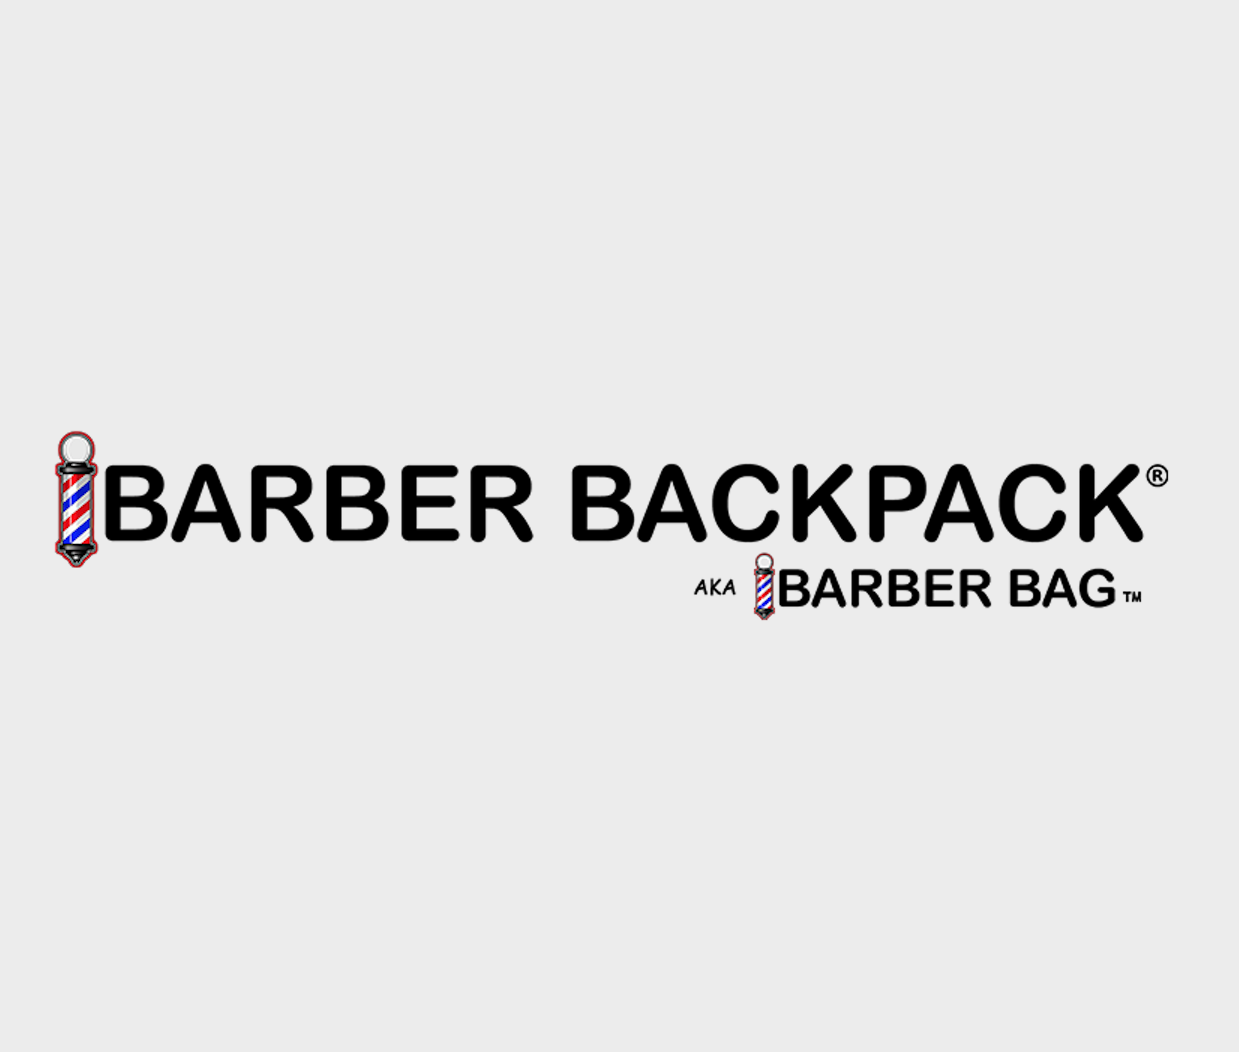 Barber backpakpack and barber bag trdemarked